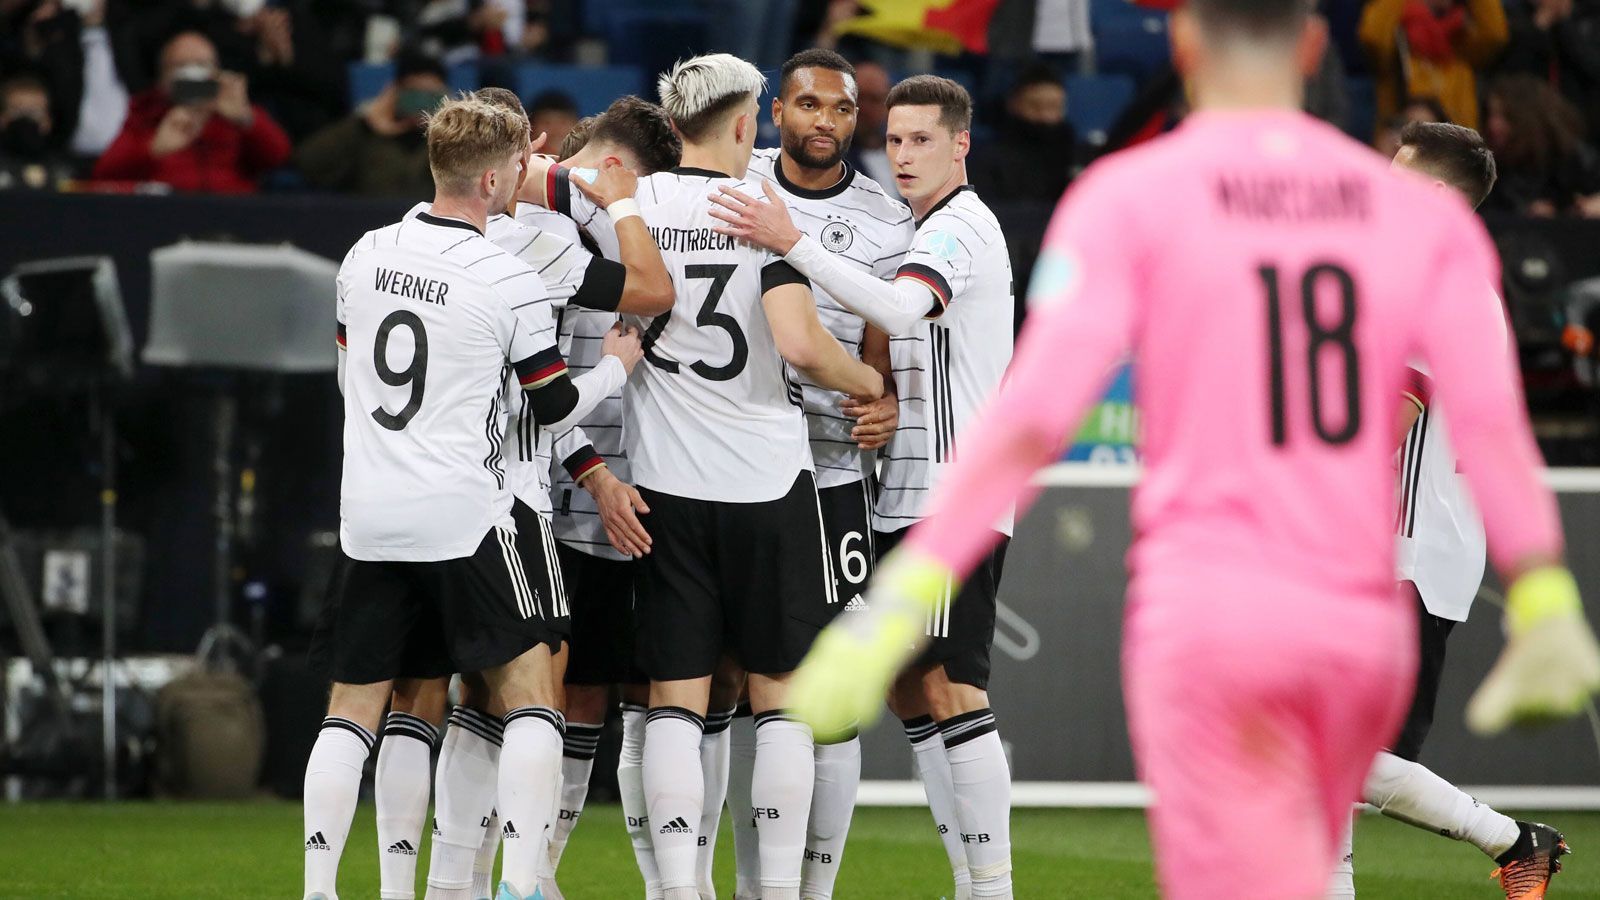 
                <strong>Deutschland besiegt Israel: Die Noten der DFB-Stars</strong><br>
                Deutschland setzt sich durch die Treffer von Kai Havertz und Timo Werner mit 2:0 gegen Israel durch. ran bewertet die Leistungen der deutschen Nationalspieler.
              